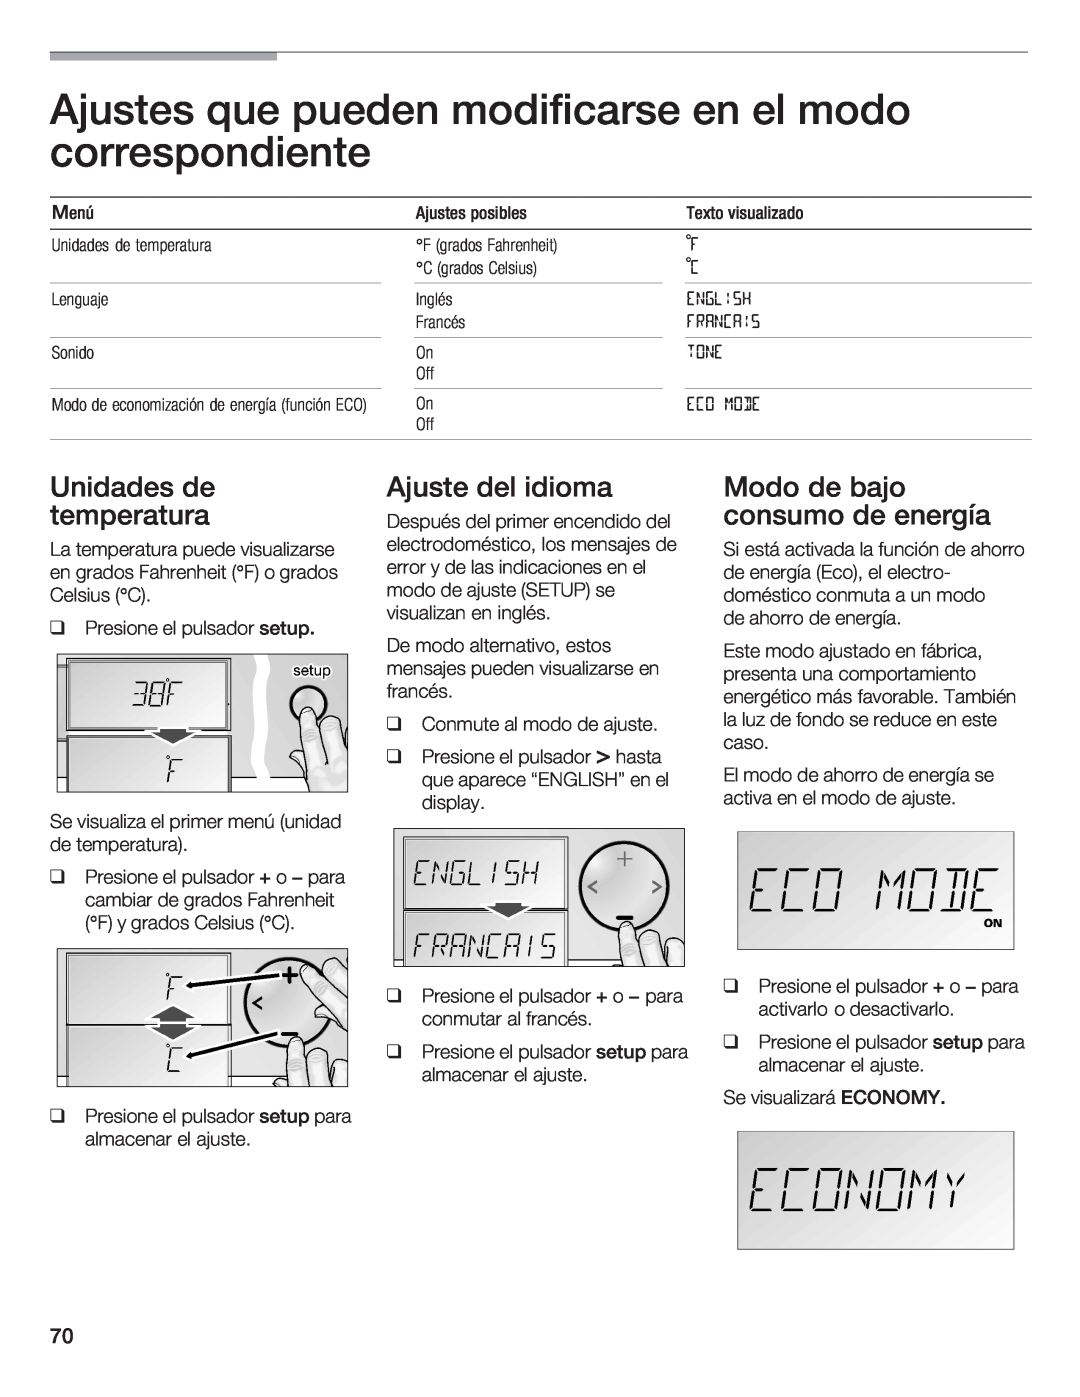 Bosch Appliances B36IB manual Unidades, Ajuste, idioma, temperatura, Modo de bajo consumo de energía 